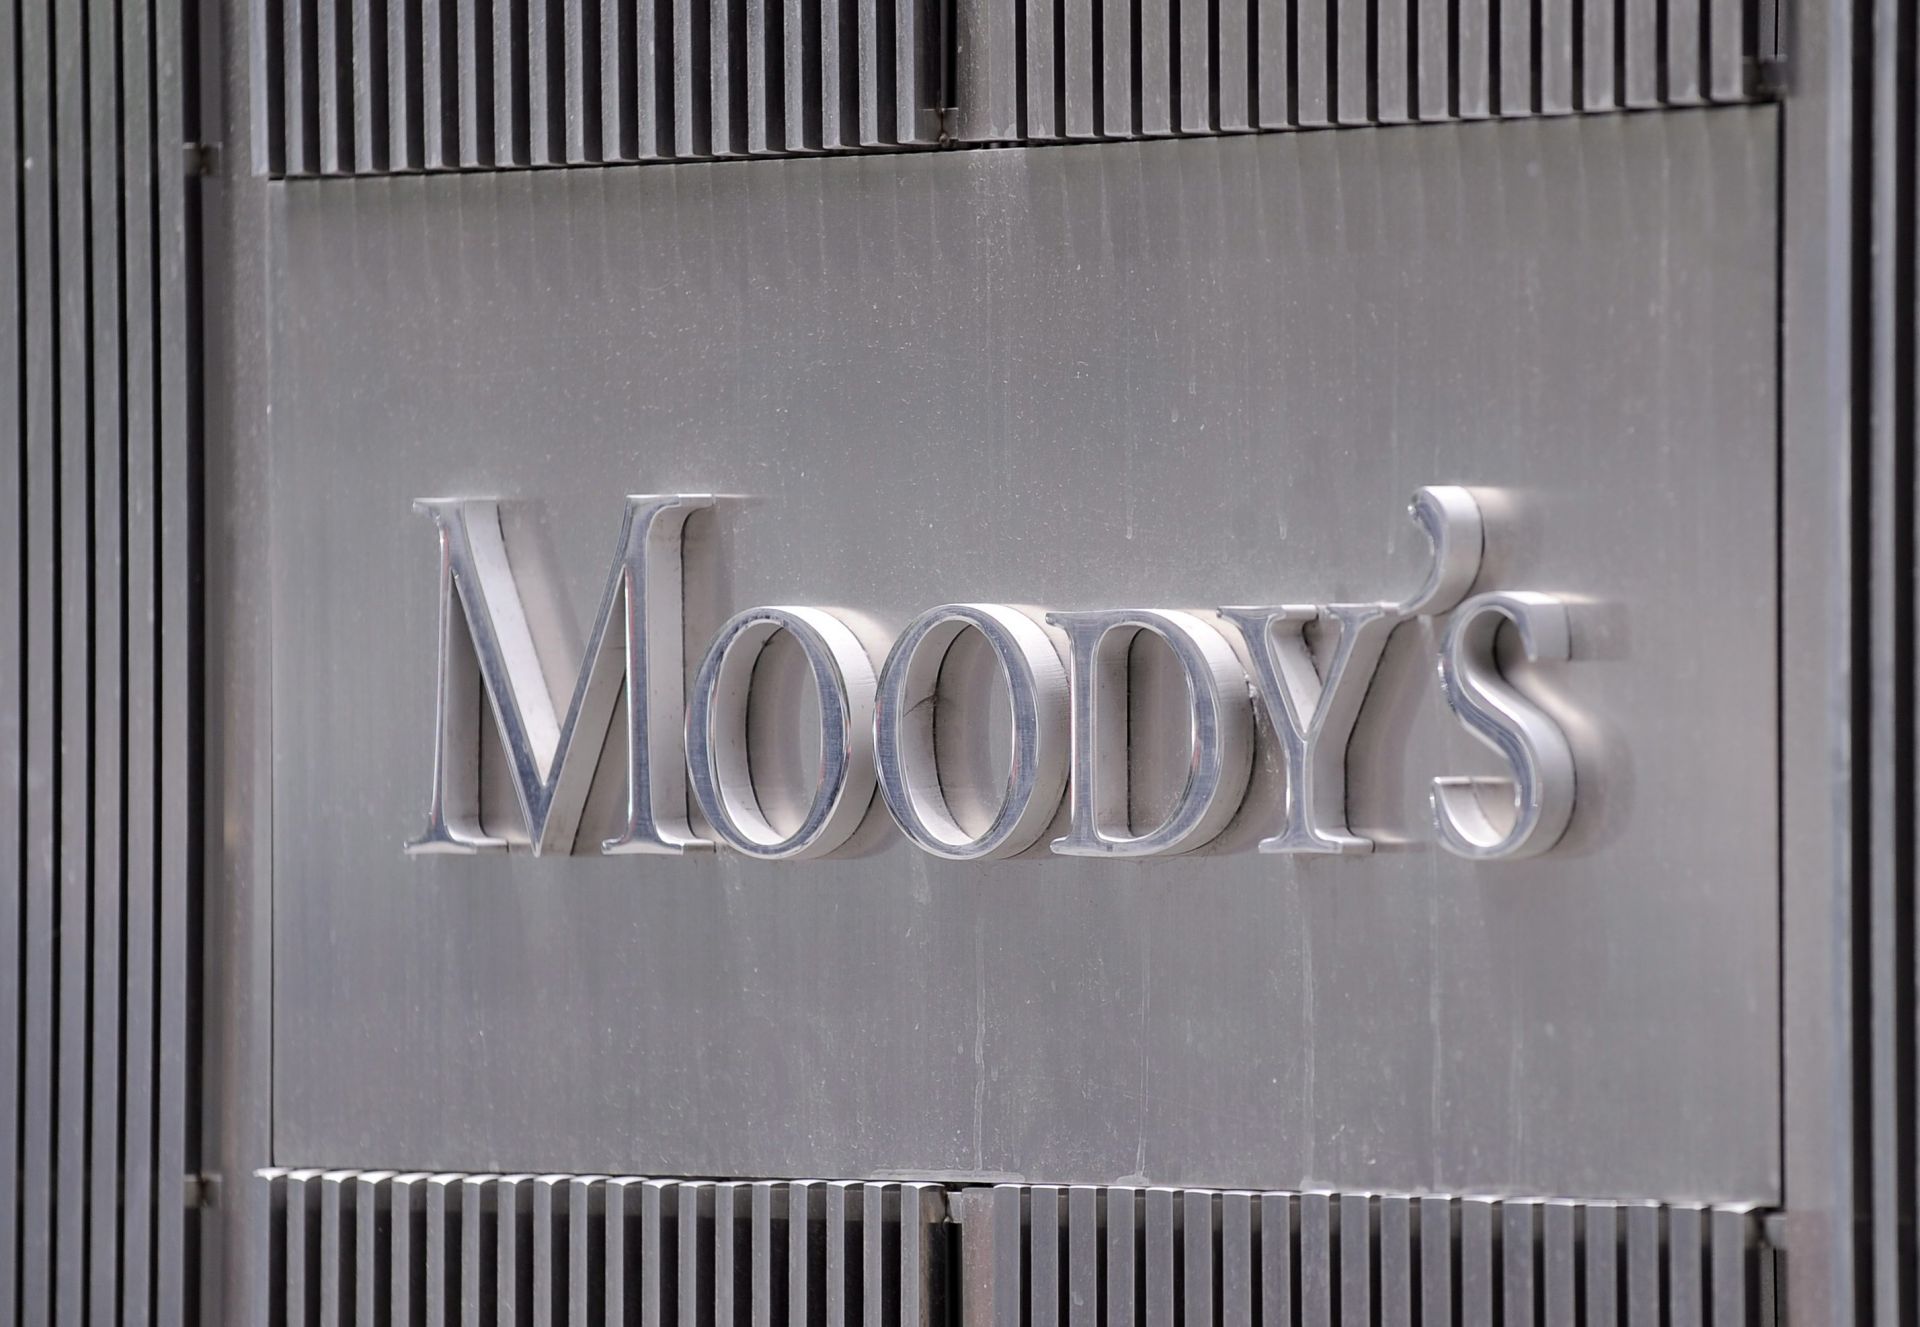 Рейтинговата агенция Мудис (Moody's) потвърди суверенния кредитен рейтинг на САЩ на най-високото му равнище Ааа